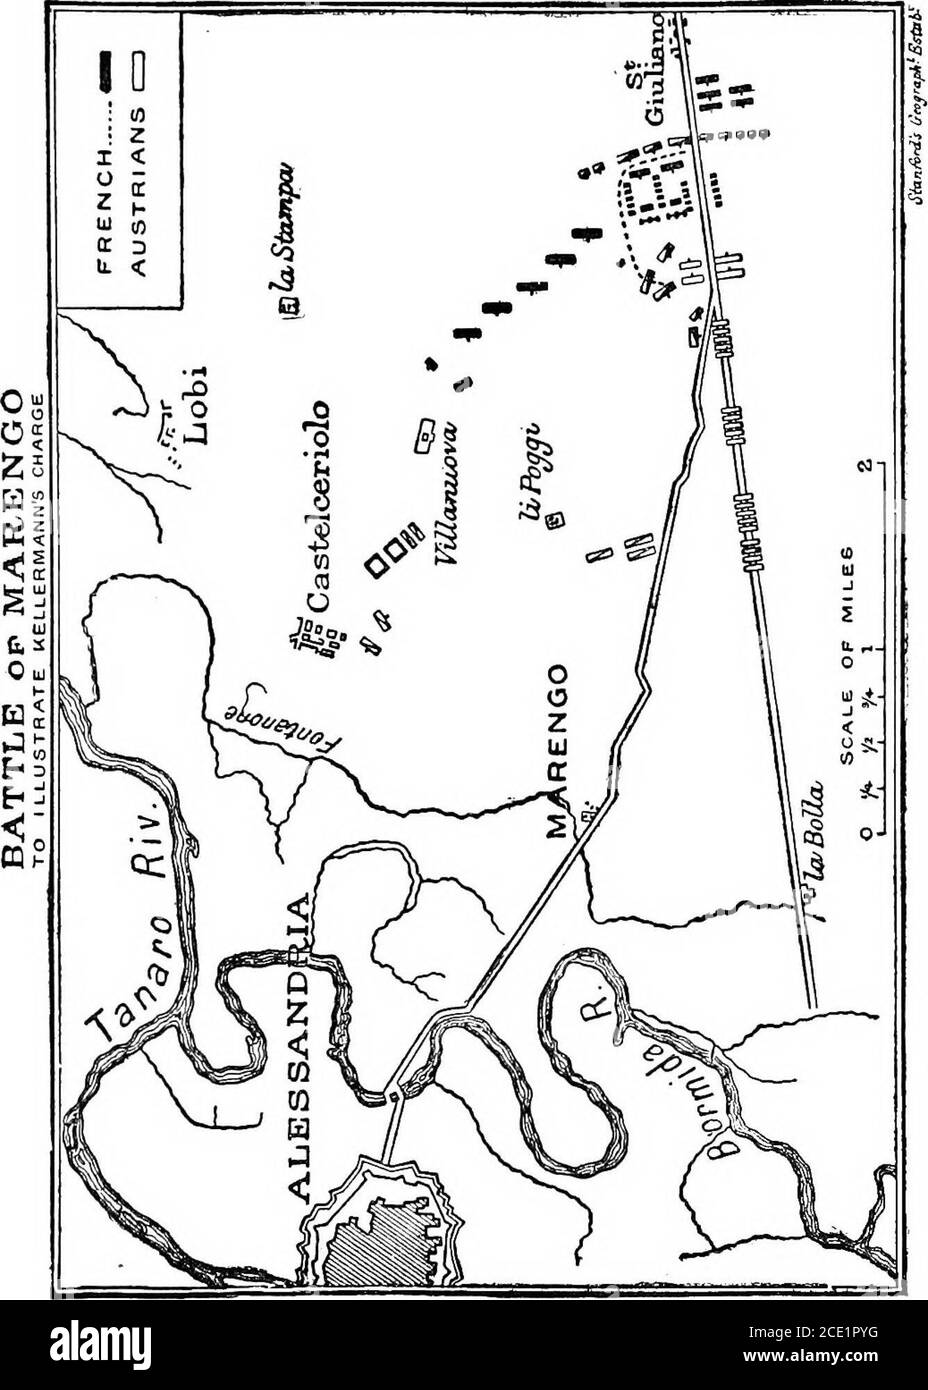 . La vie de Napoléon Ier, y compris les nouveaux matériaux des documents officiels britanniques . ve, la bataille de Marengo avait commencé : et la plus grande partie de ce jour mouvementé, le 14 juin, Les Français n'avaient que 18,000 hommes pour s'opposer à l'apparition de 31,000 Autrichiens.^ comme le montre la carte d'accompagnement, le village de Marengo se trouve dans la plaine qui s'étend vers l'est sur les rives de la rivière Bormida vers le pays vallonné de Stradella. Le village se trouve sur la route haute direction est depuis la forteresse d'Alessandria, le fief de la chefferie du nord-ouest de l'Italie. La plaine est coupée par num Banque D'Images